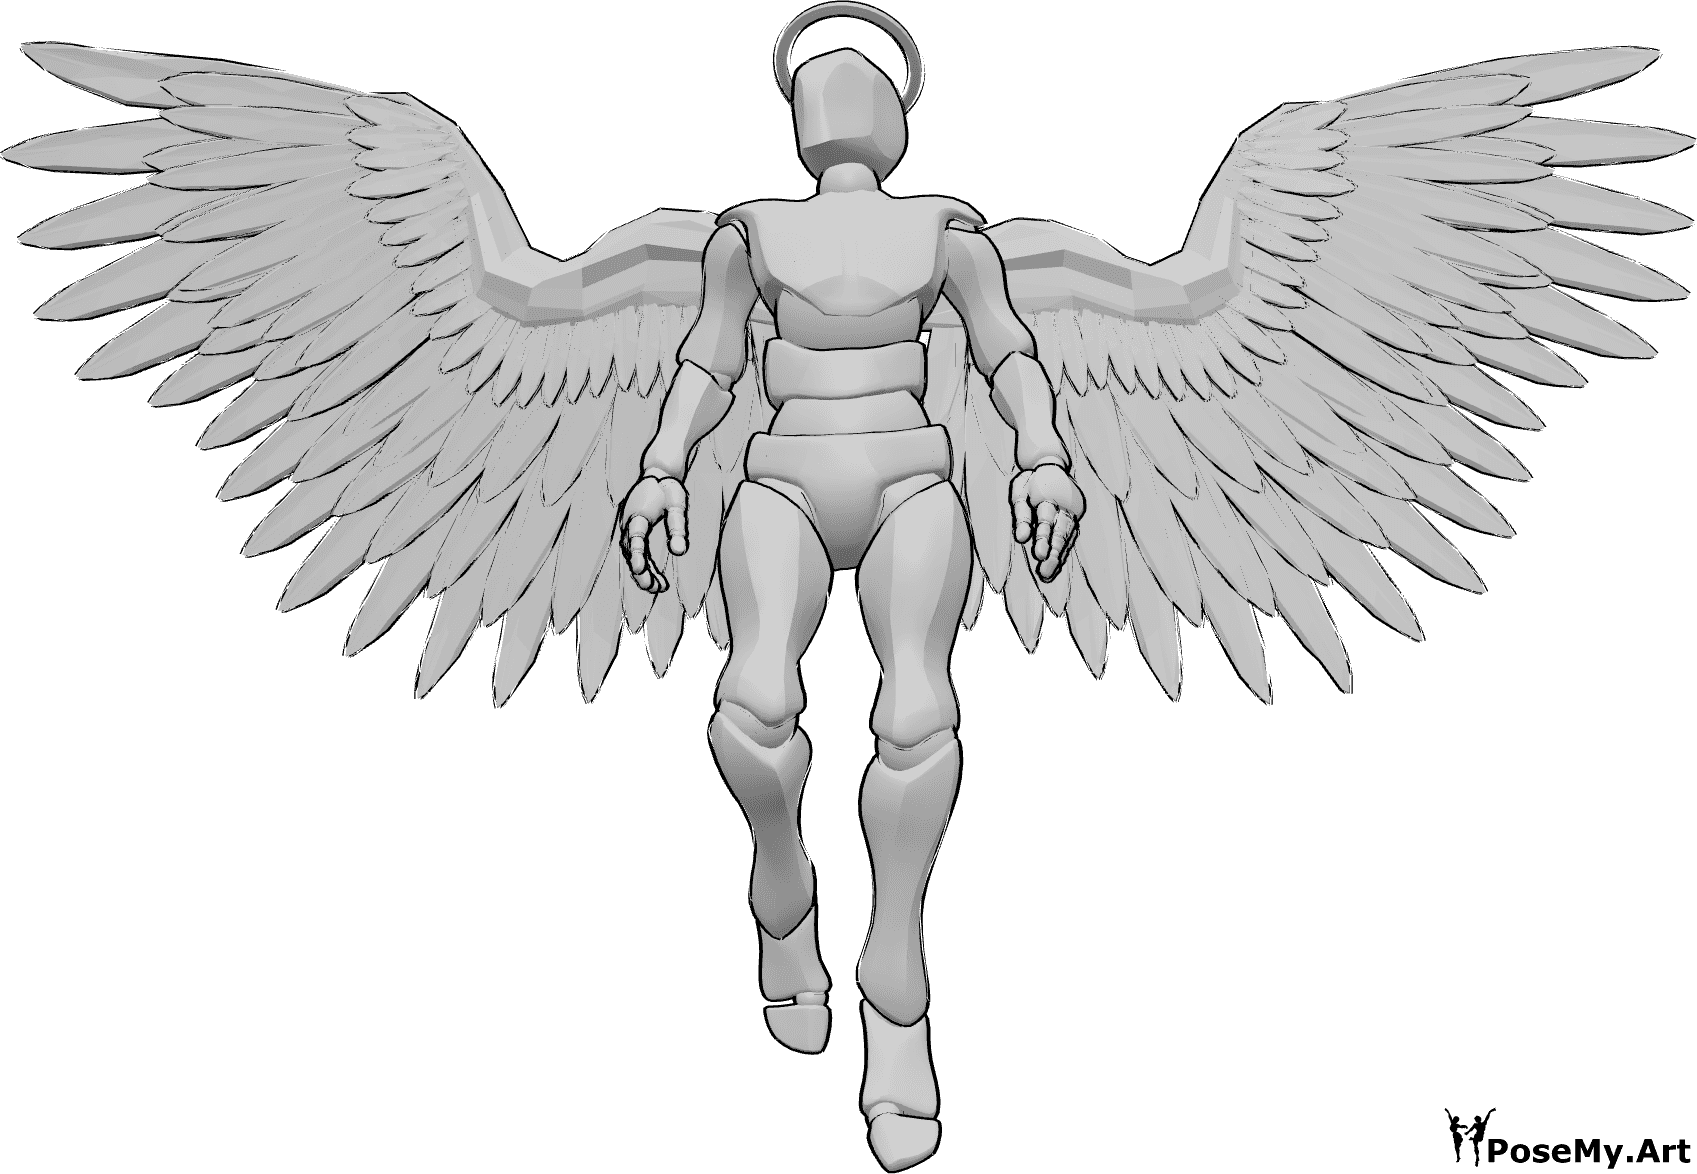 Référence des poses- Ange masculin en train de voler - Ange masculin avec une auréole et des ailes, volant vers le haut et regardant vers la droite